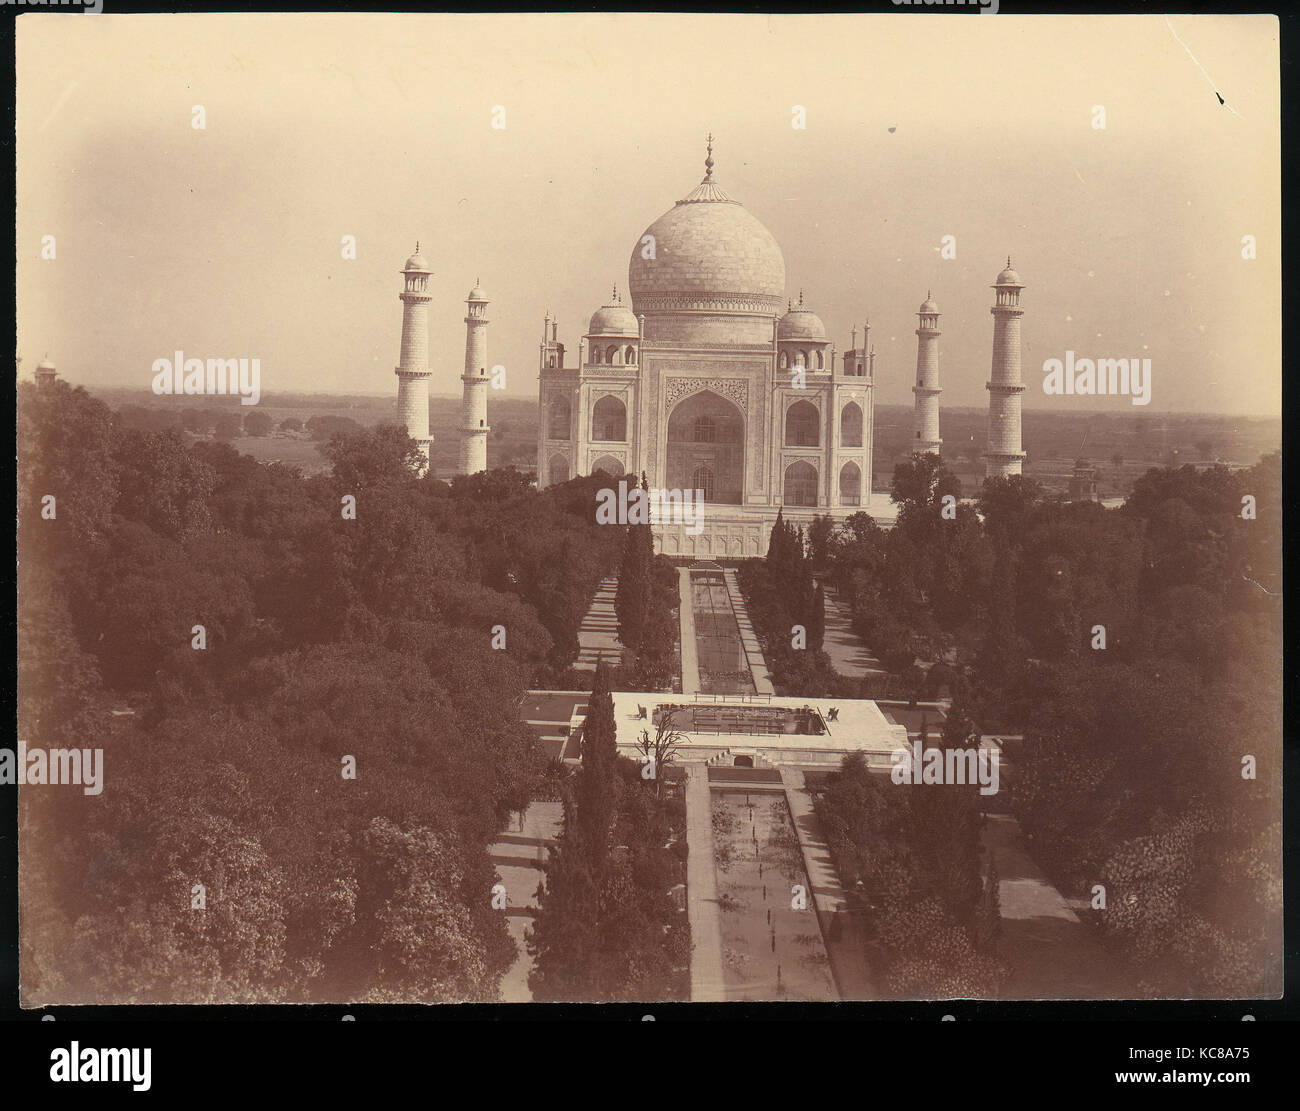 Vista del Taj Mahal desde la puerta, Agra, Desconocido, 1860-1970 Foto de stock